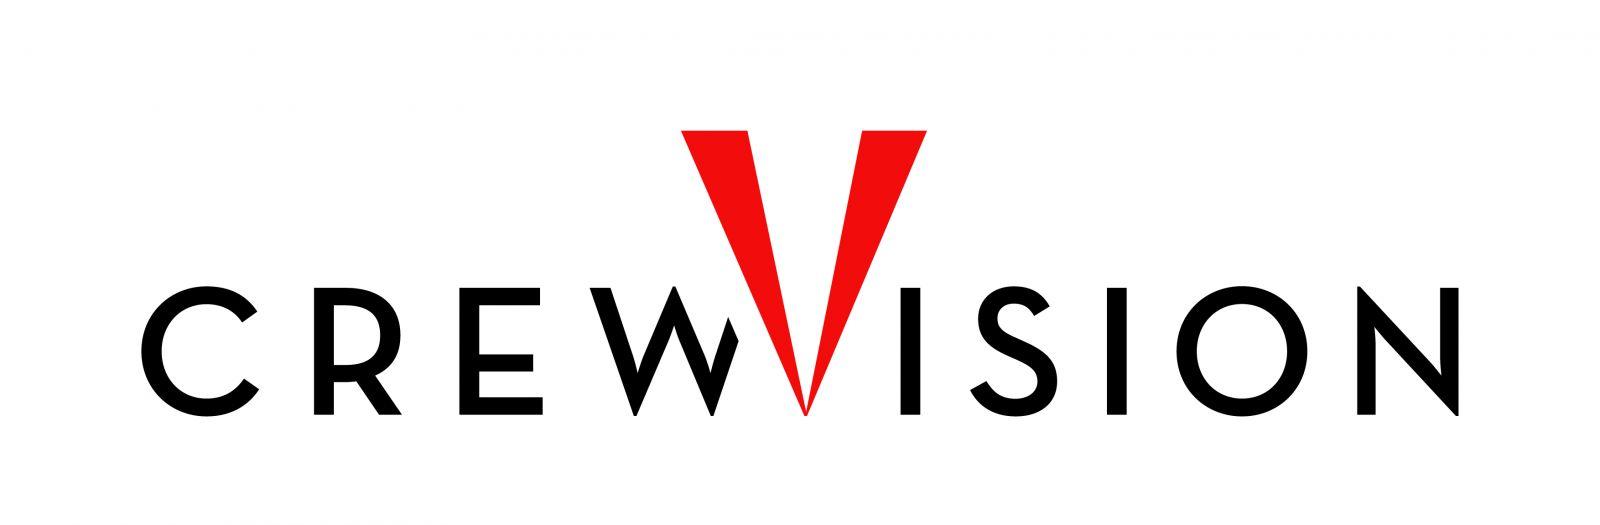 NSSL Logo - CrewVision - NSSLGlobal